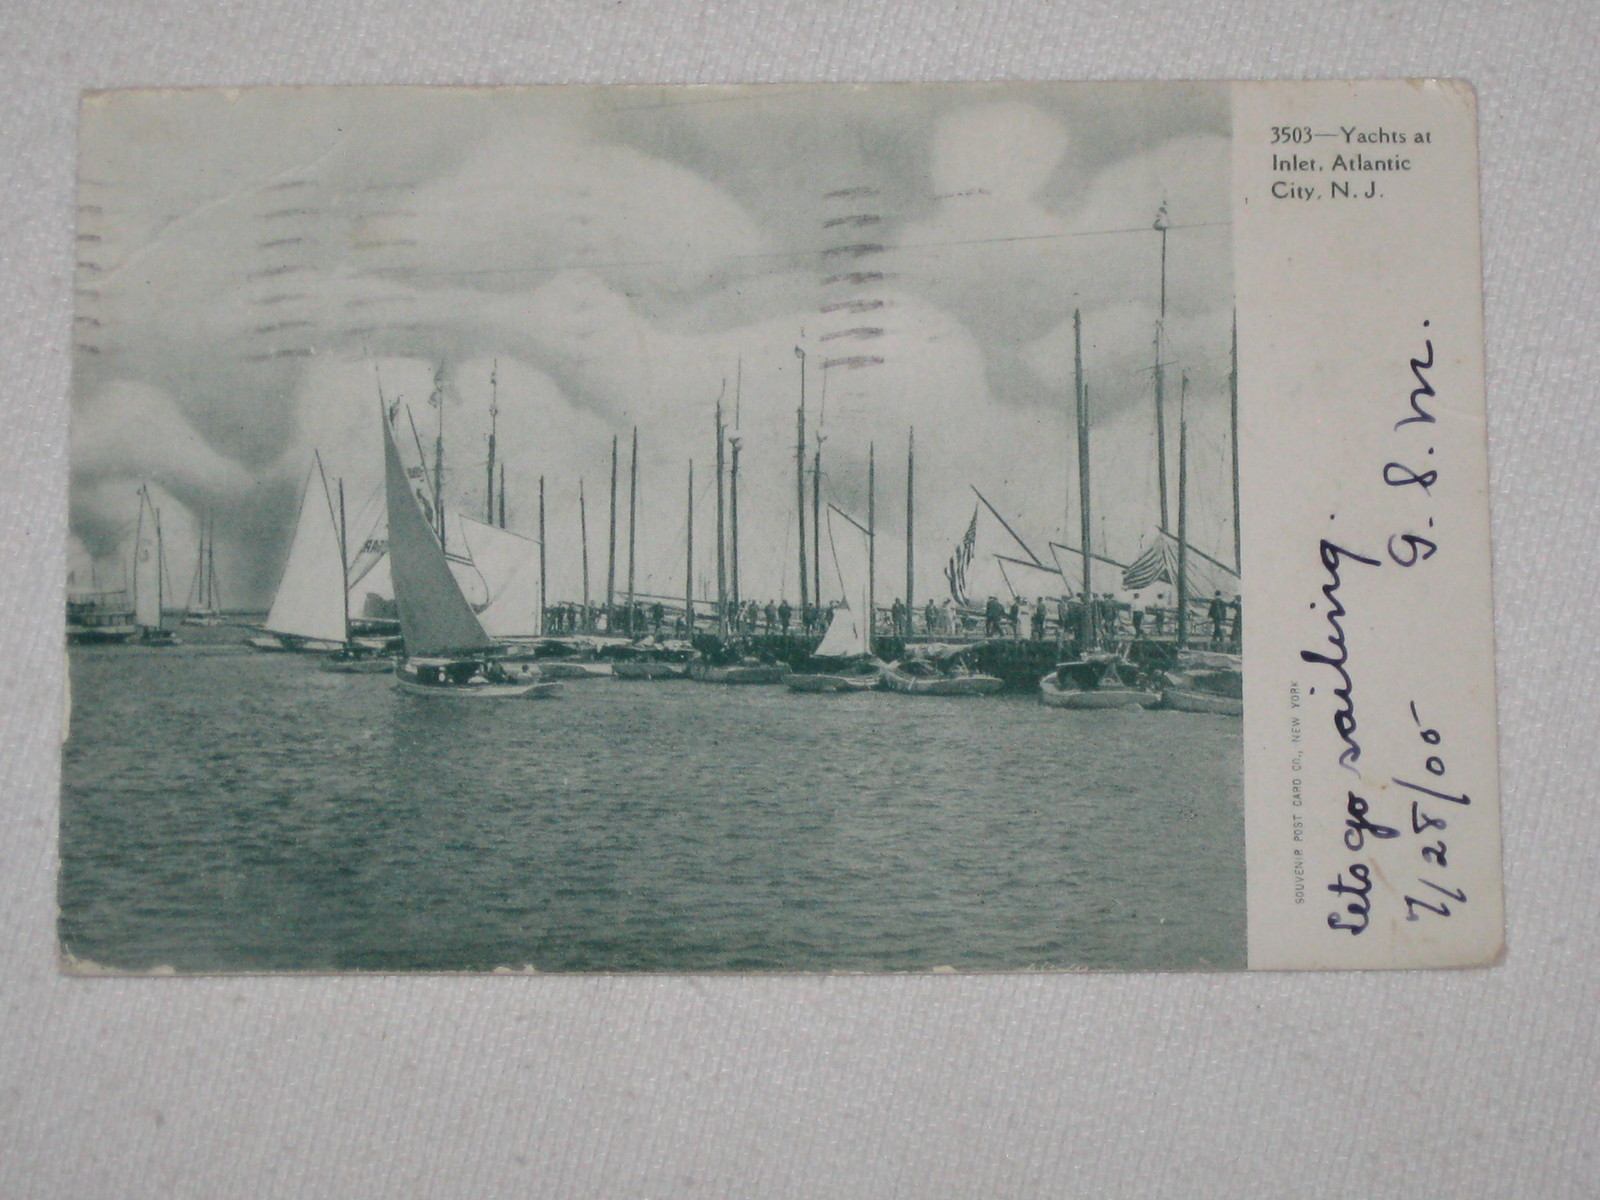 Atlantic City - Sailboats at the inlet - 1905